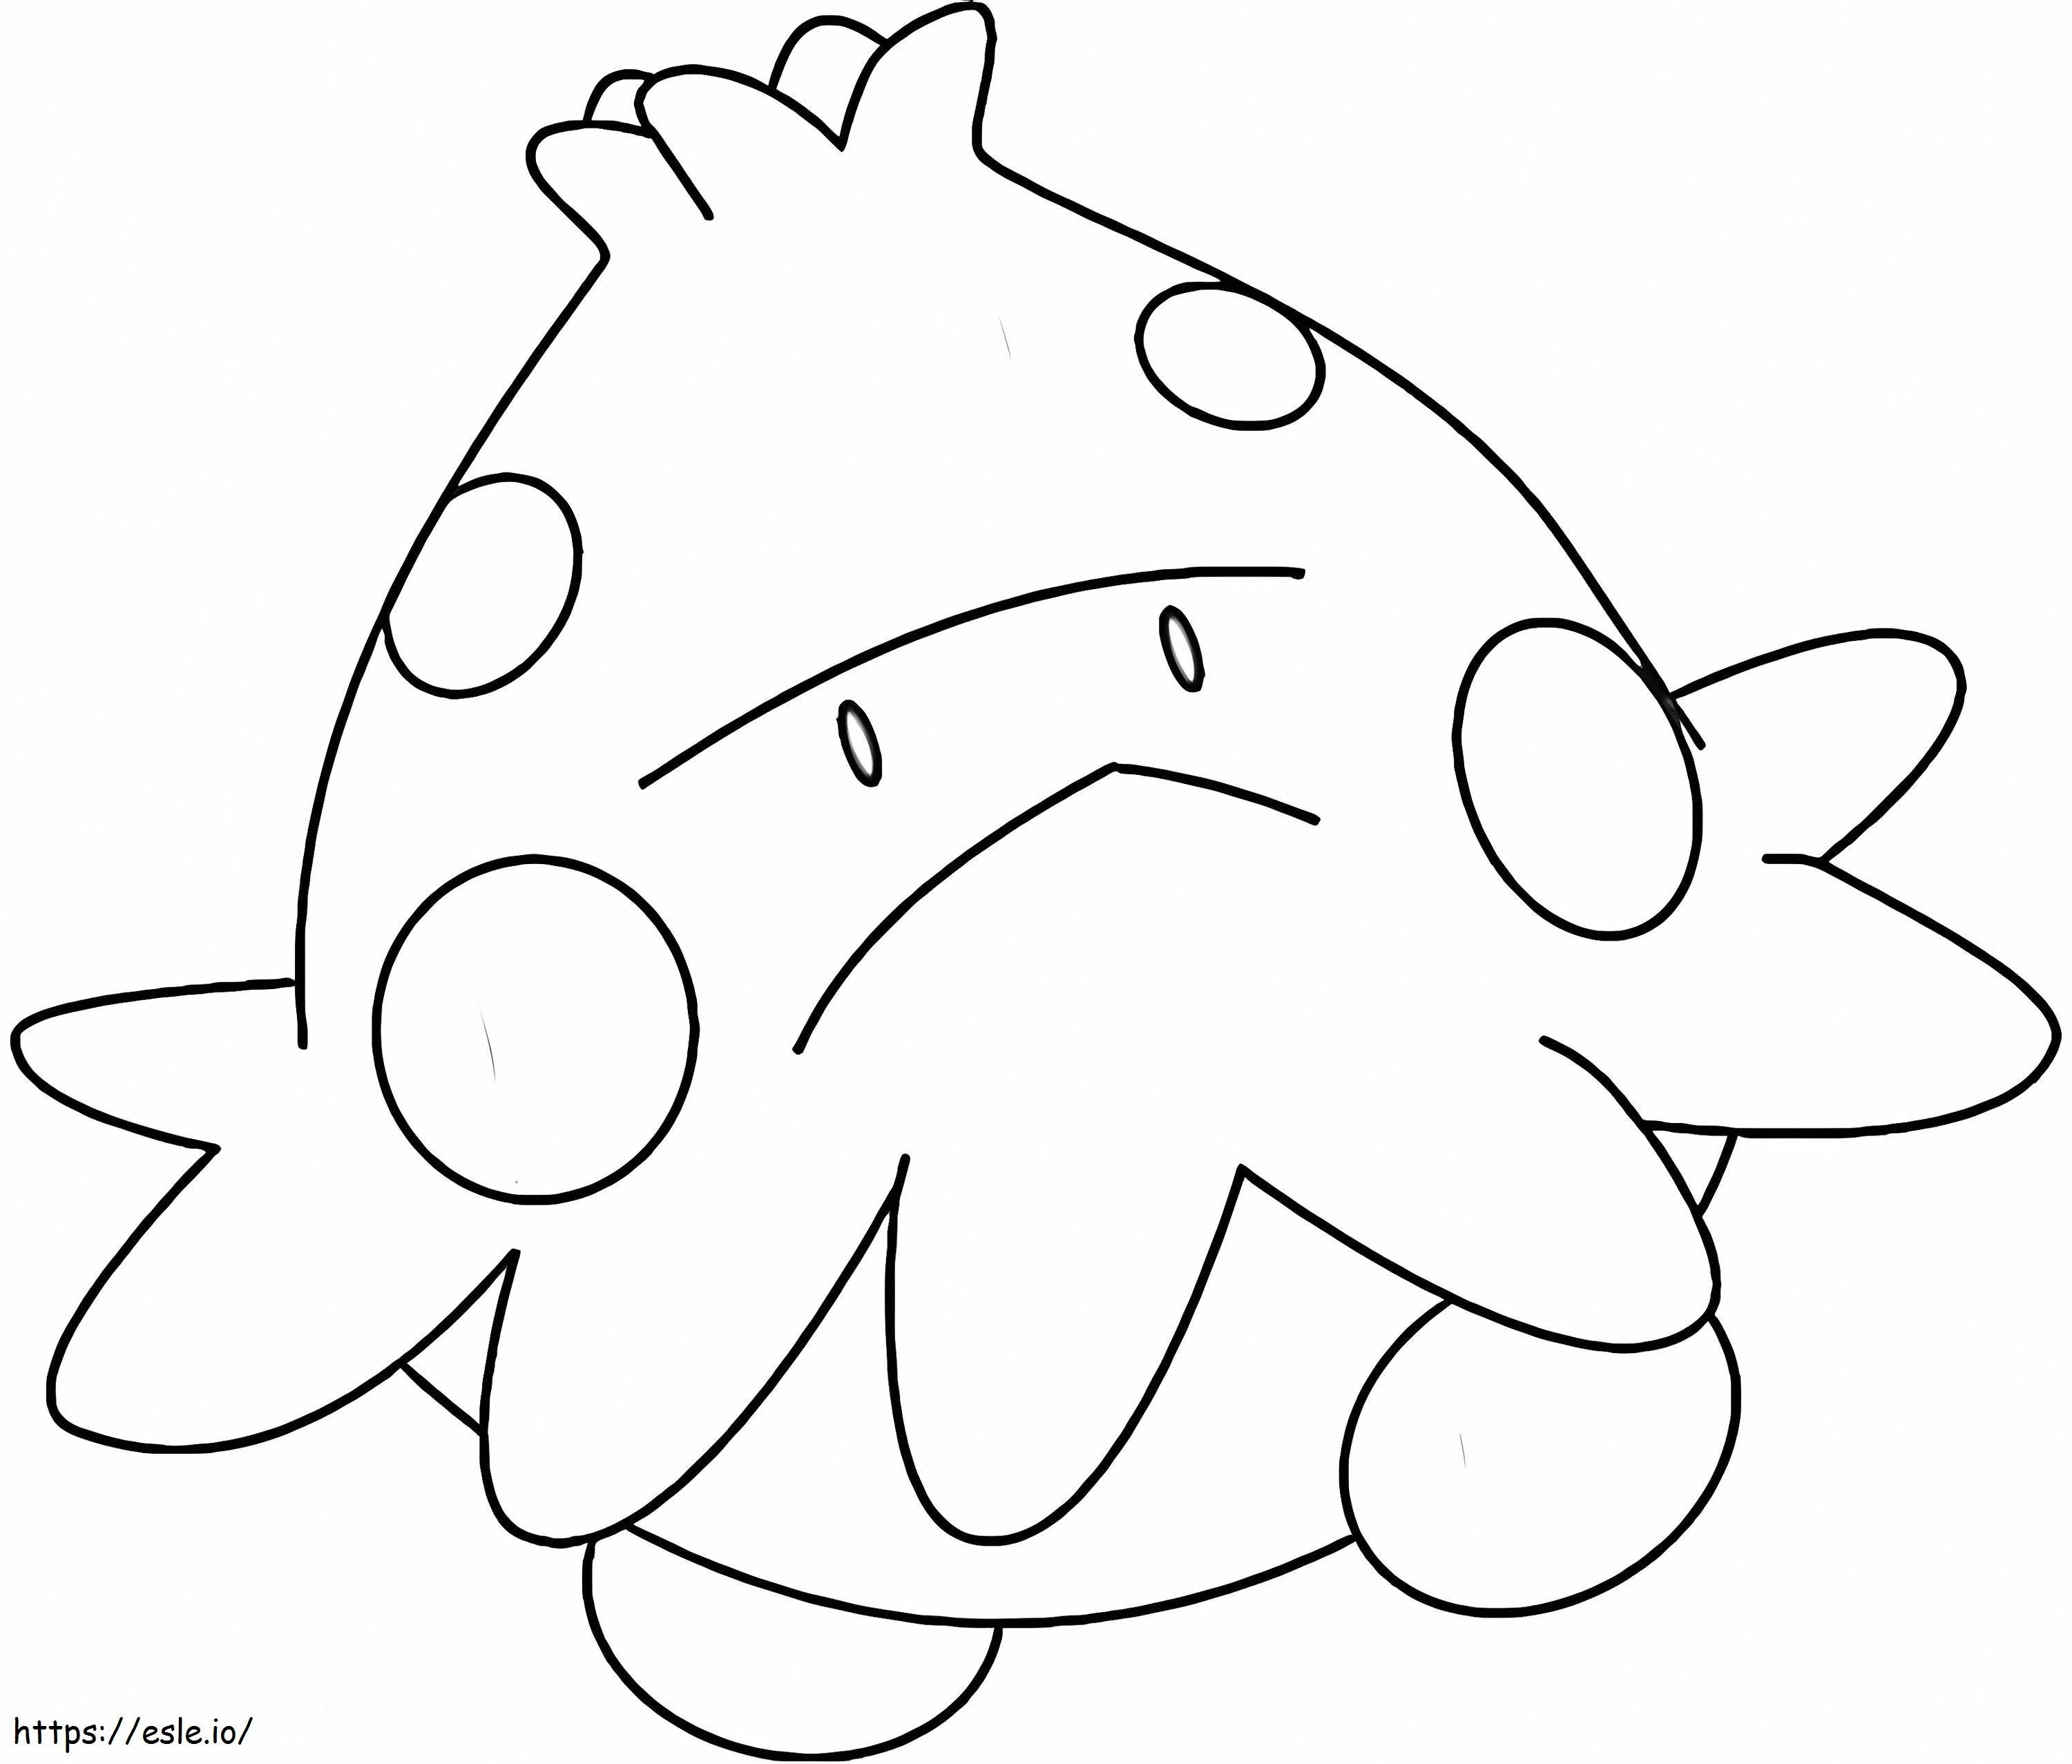 Pilzartiges Pokémon 1 ausmalbilder